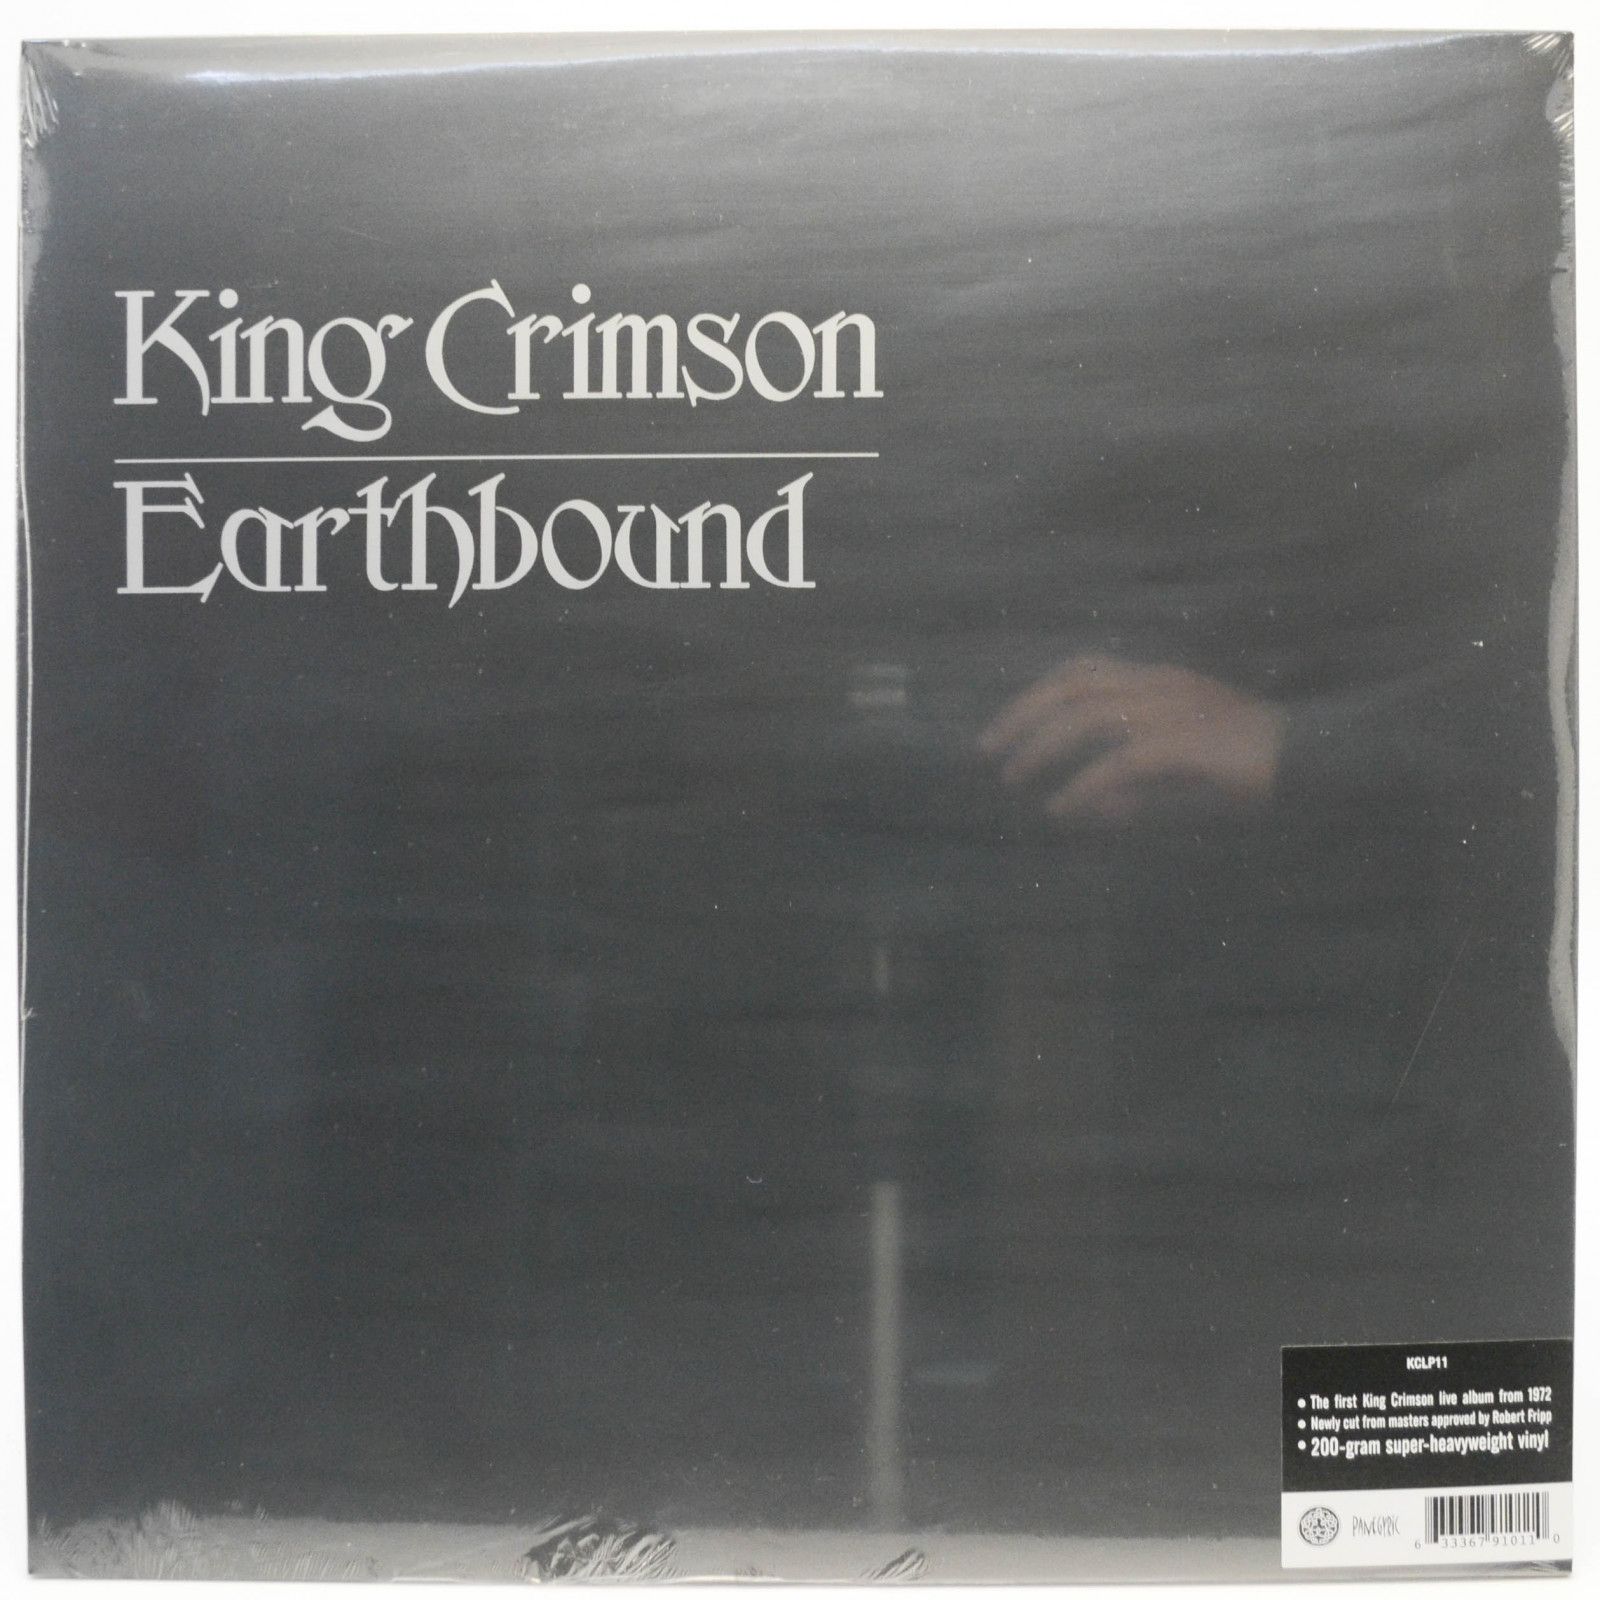 King Crimson — Earthbound (UK), 1972